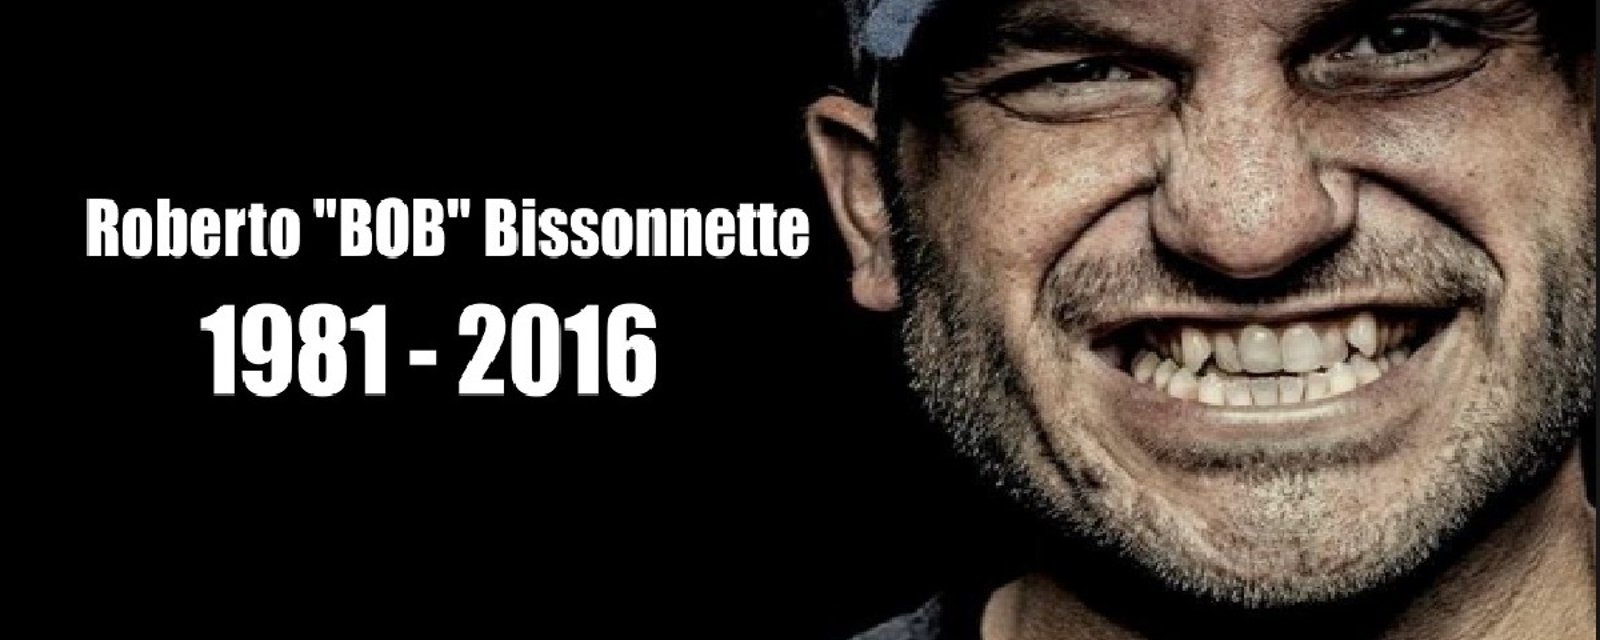 Controverse entourant Bob Bissonnette!